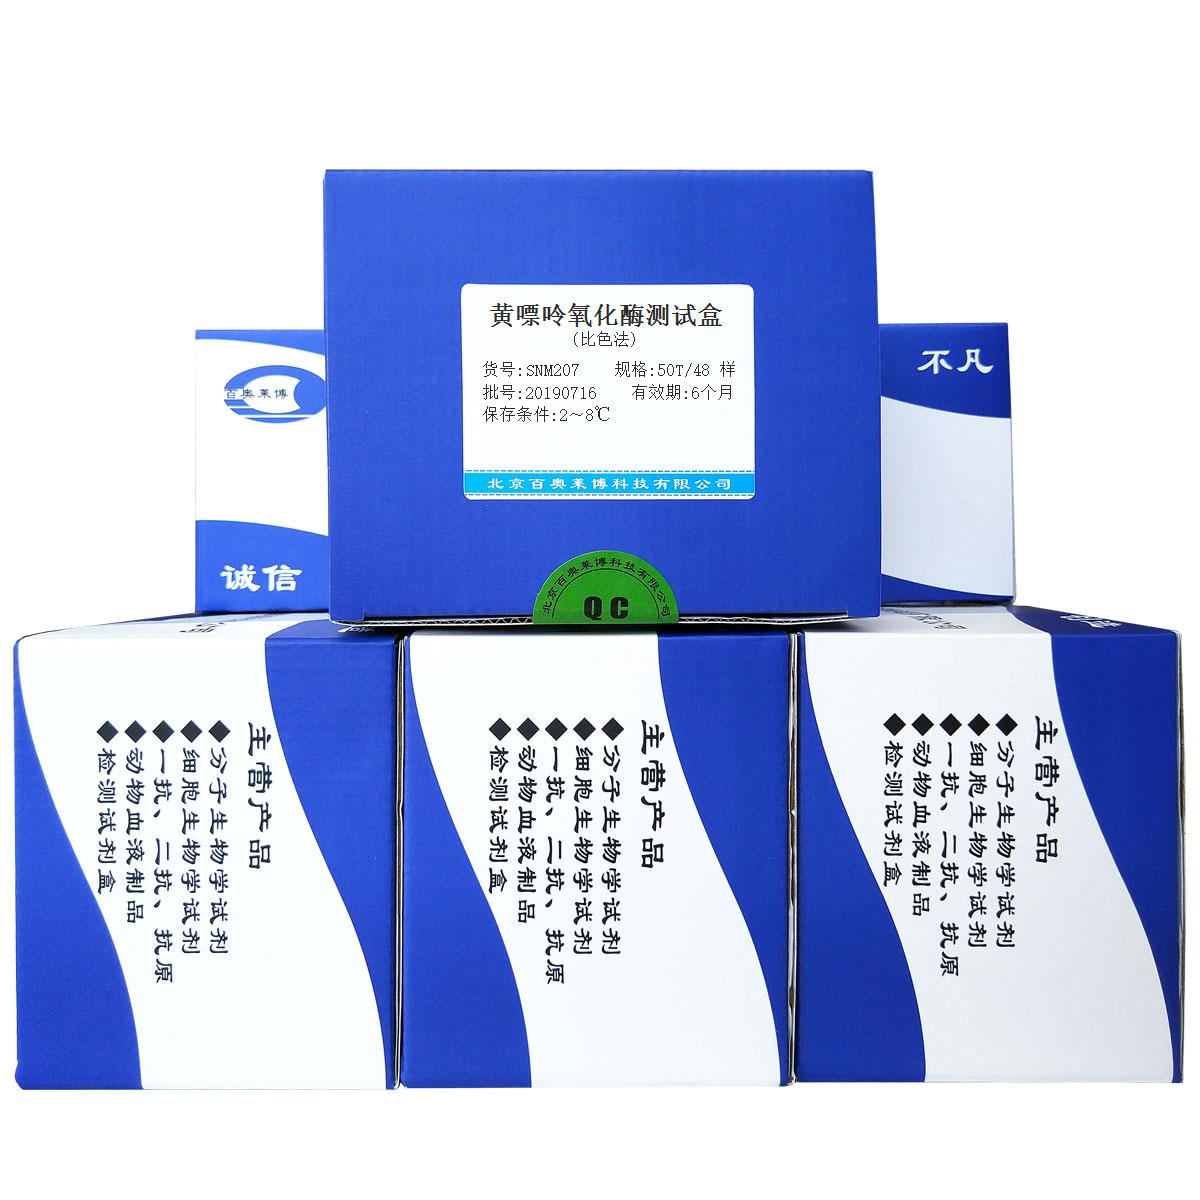 黄嘌呤氧化酶测试盒(比色法)北京现货